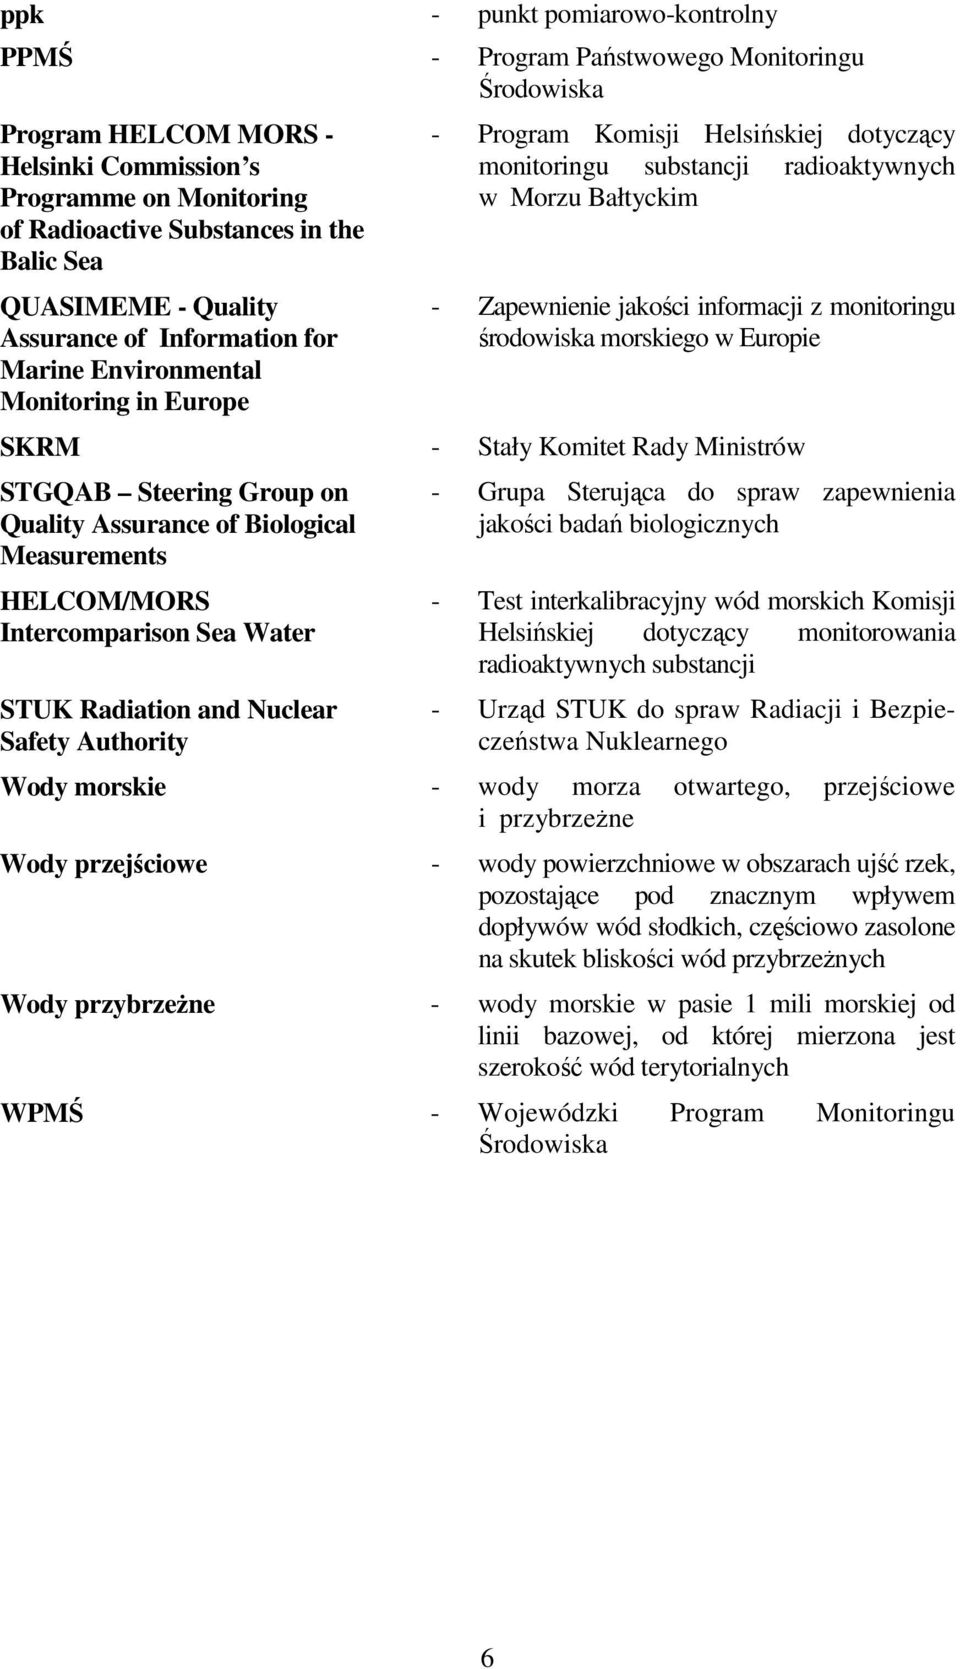 Zapewnienie jakości informacji z monitoringu środowiska morskiego w Europie SKRM - Stały Komitet Rady Ministrów STGQAB Steering Group on Quality Assurance of Biological Measurements HELCOM/MORS